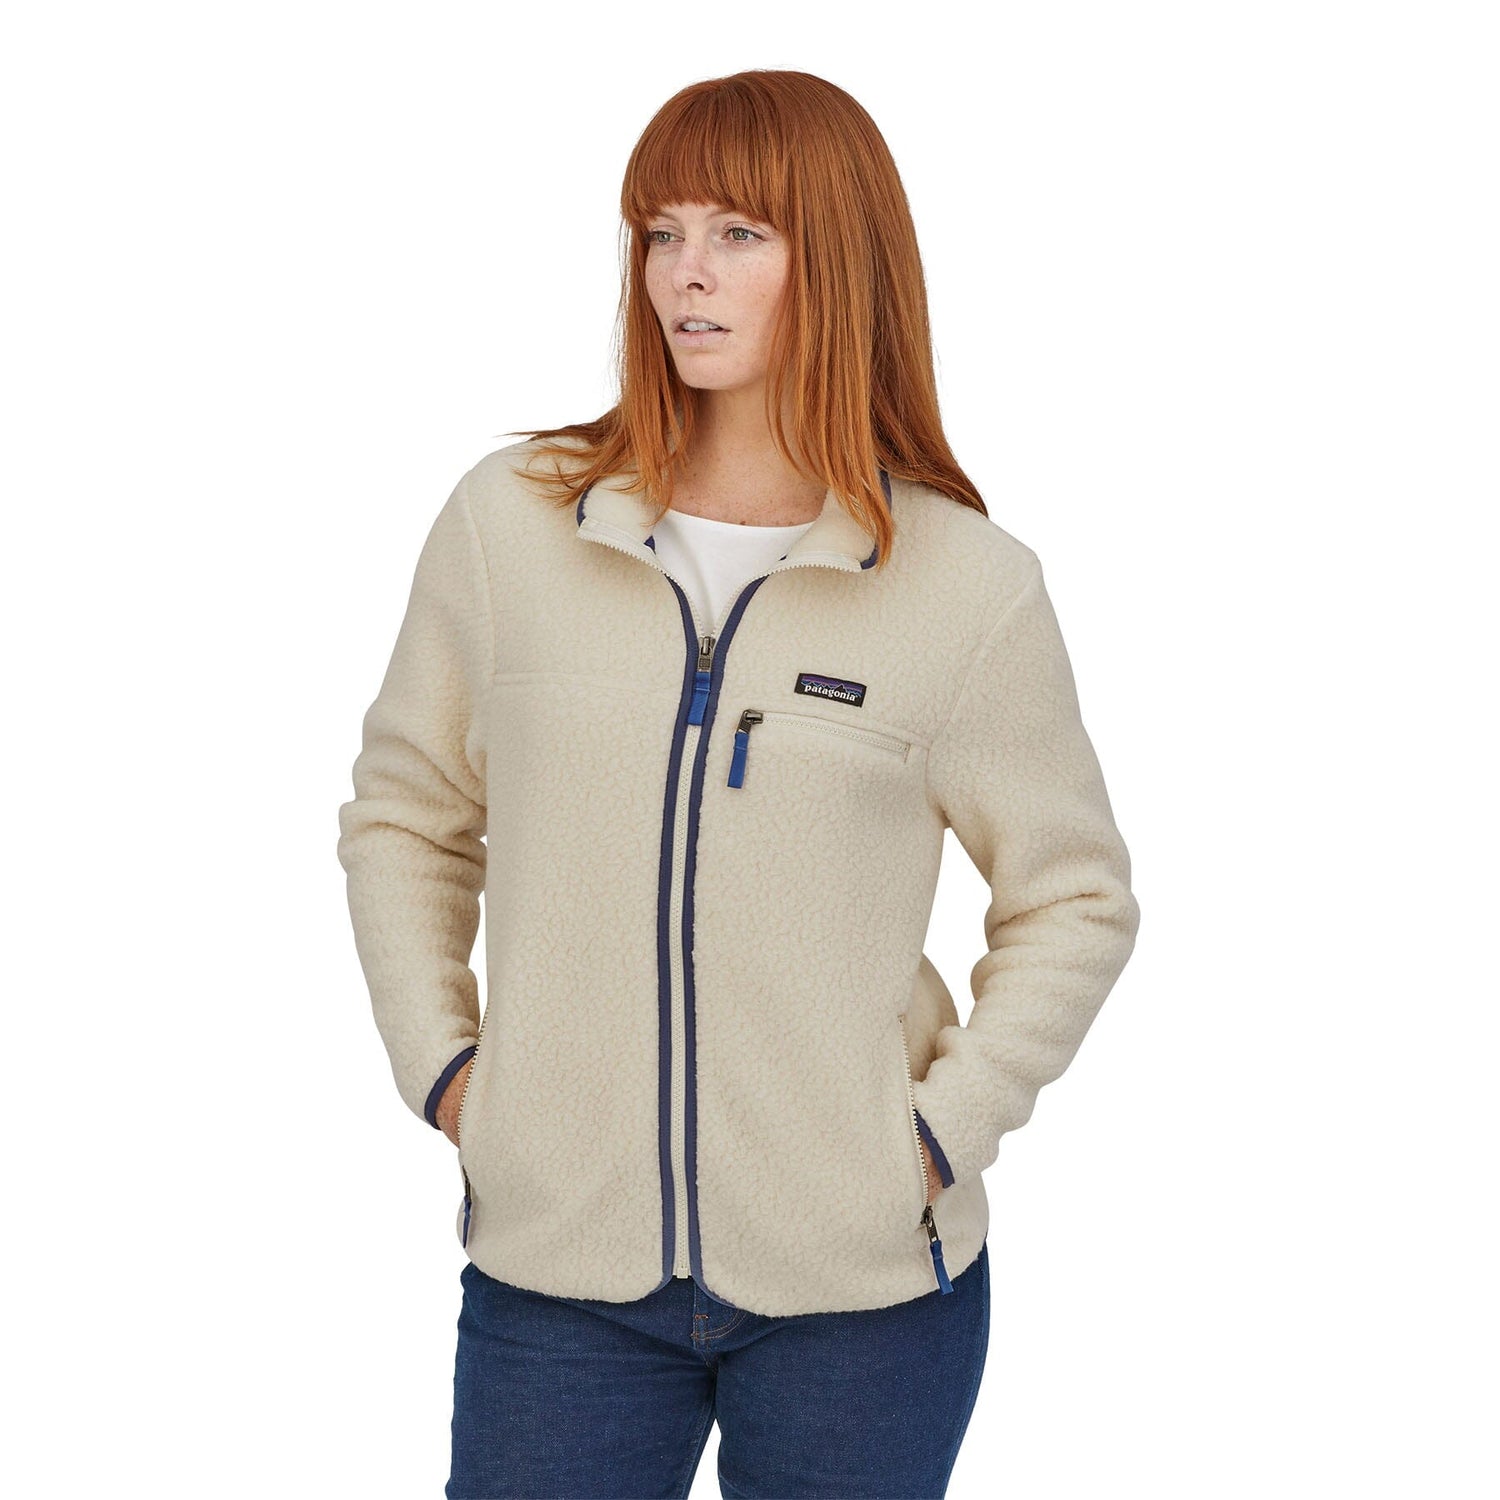 Patagonia Retro Pile Jacket - Fleece jacket Women's, Free EU Delivery